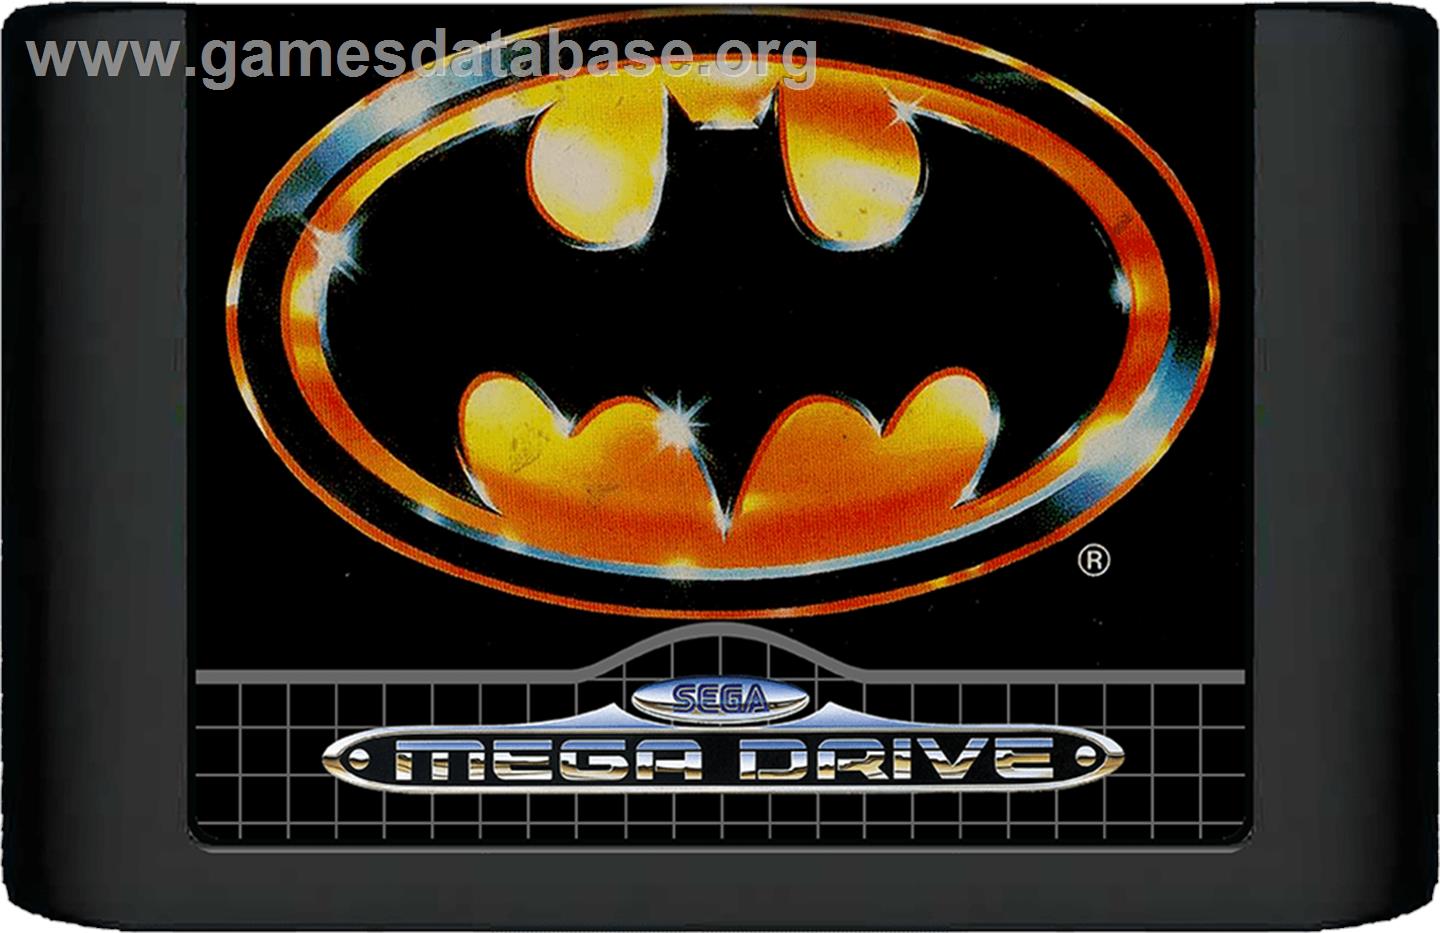 Batman: The Video Game - Sega Genesis - Artwork - Cartridge